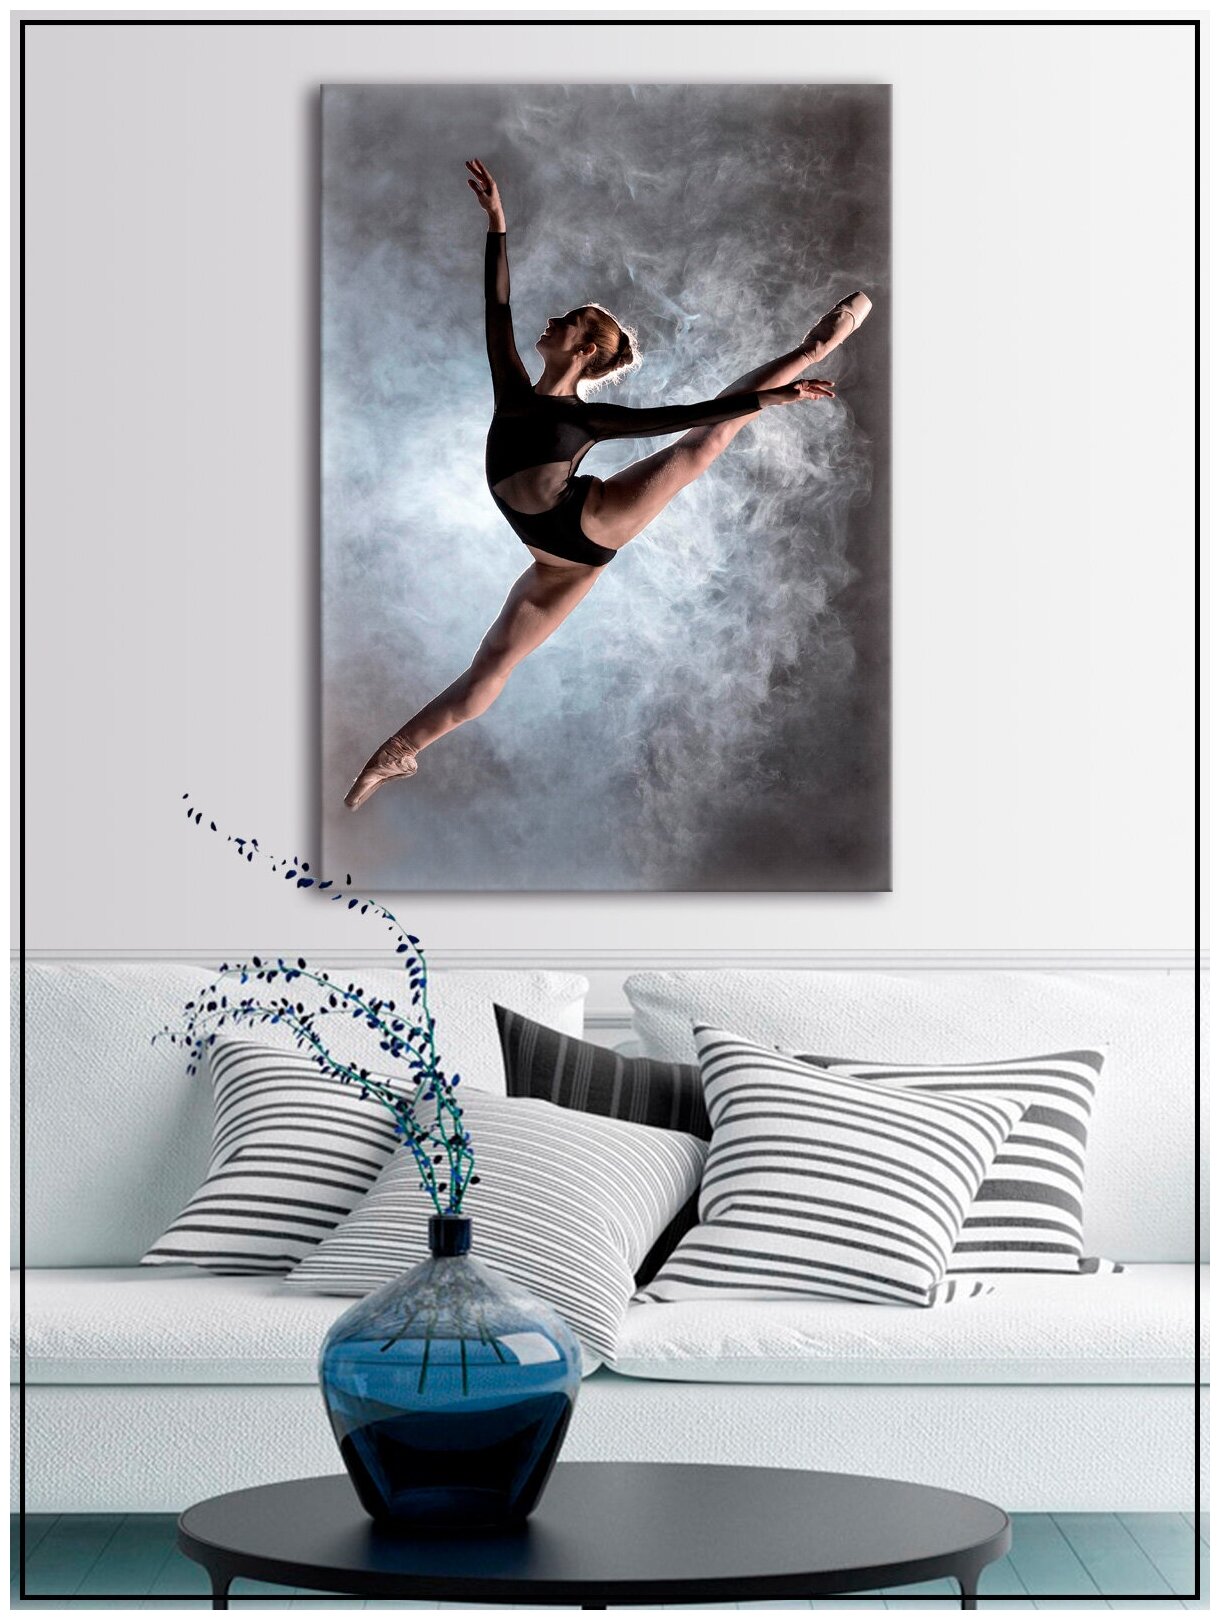 Картина для интерьера на натуральном хлопковом холсте "Балерина в прыжке", 30*40см, холст на подрамнике, картина в подарок для дома